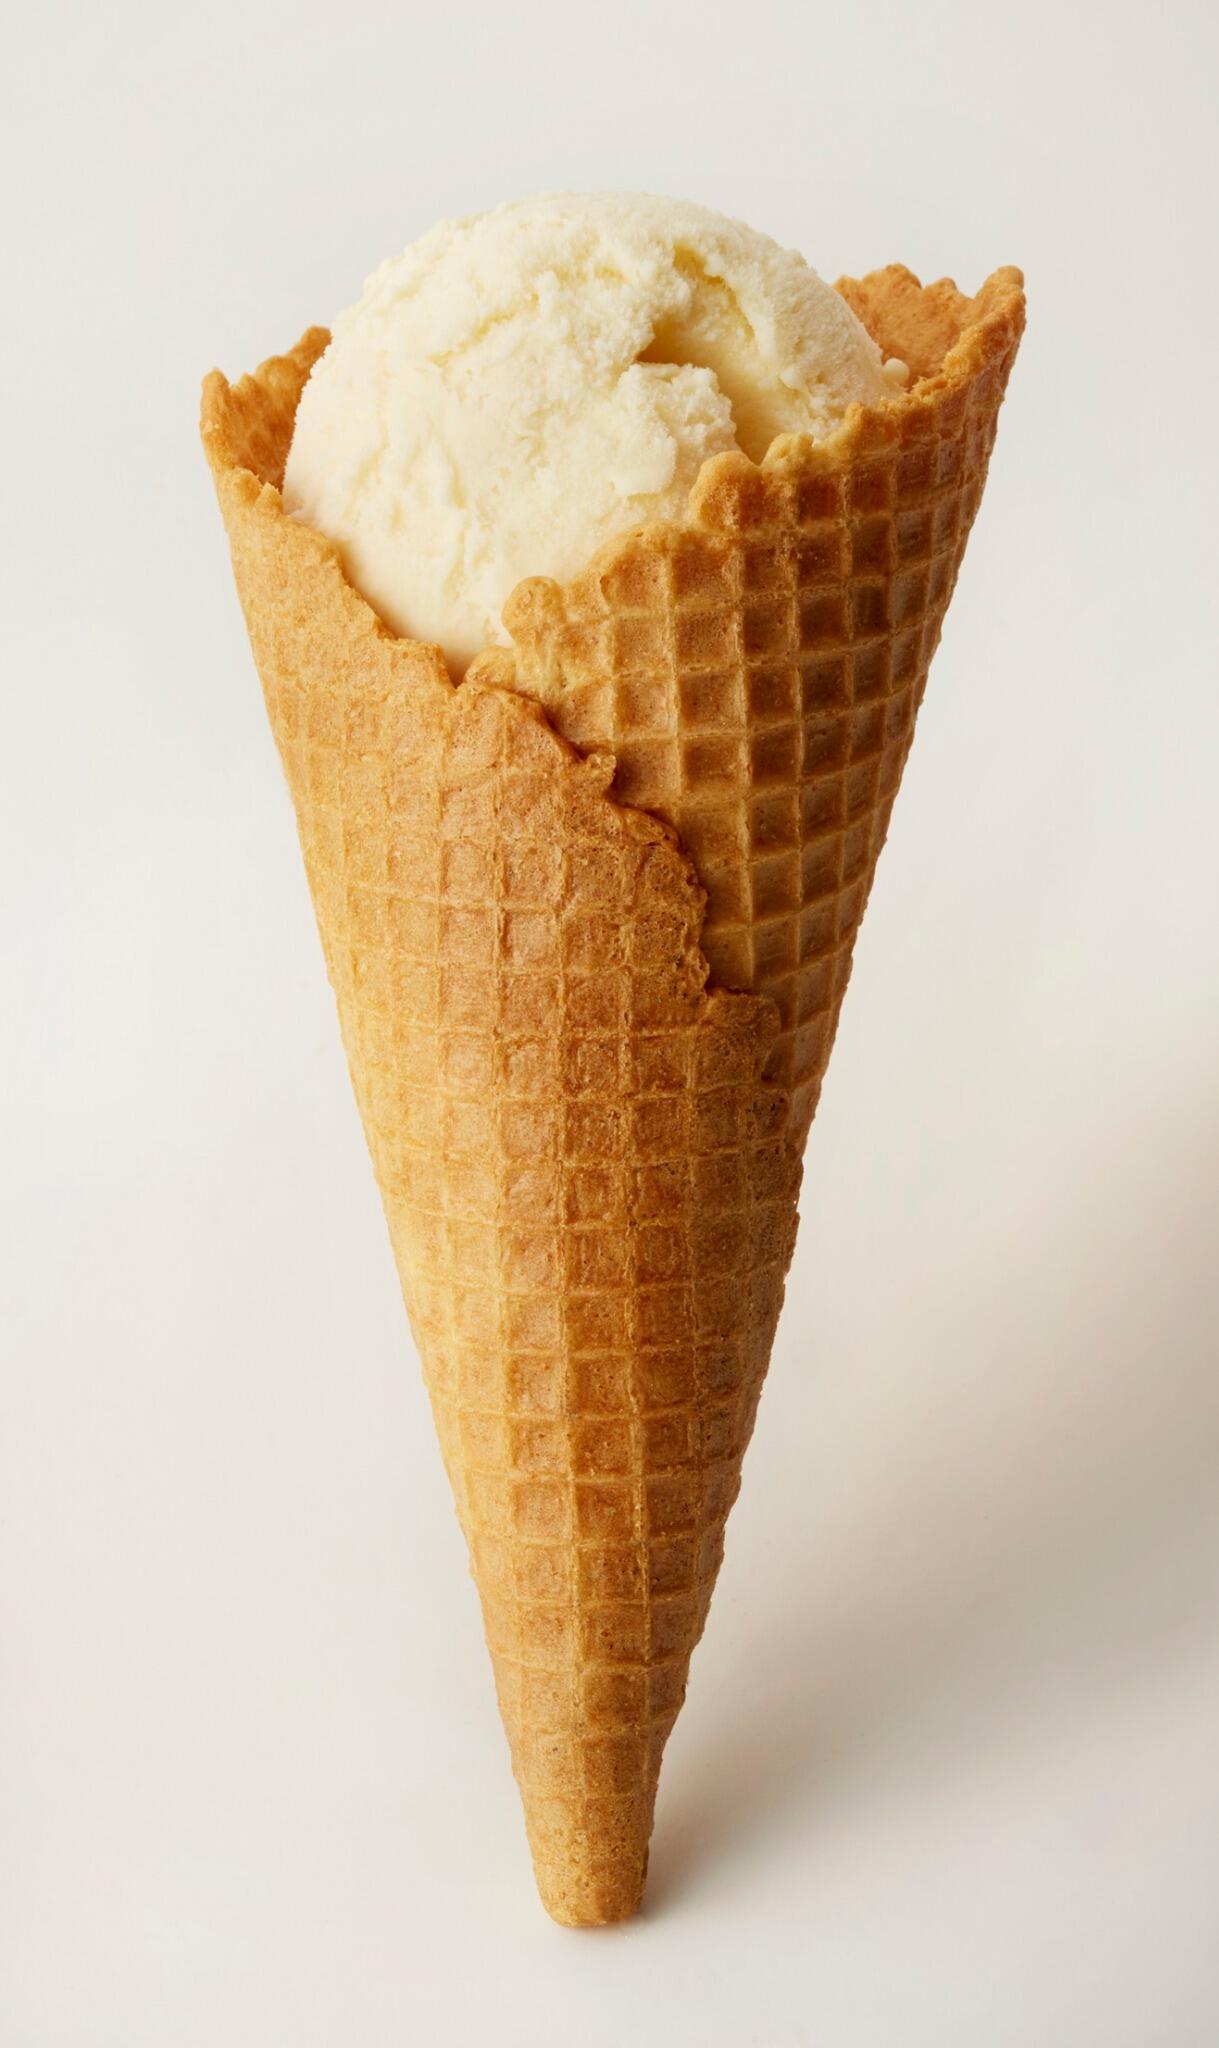 Twitter 上的 タリーズコーヒージャパン株式会社 タリーズでは ワッフルコーンのアイスクリームが発売中です 1個 250円 ざくざく食感の香ばしいワッフルコーン ワンハンドでお気軽に これからの季節 もっとアイスクリームを楽しみましょう Http